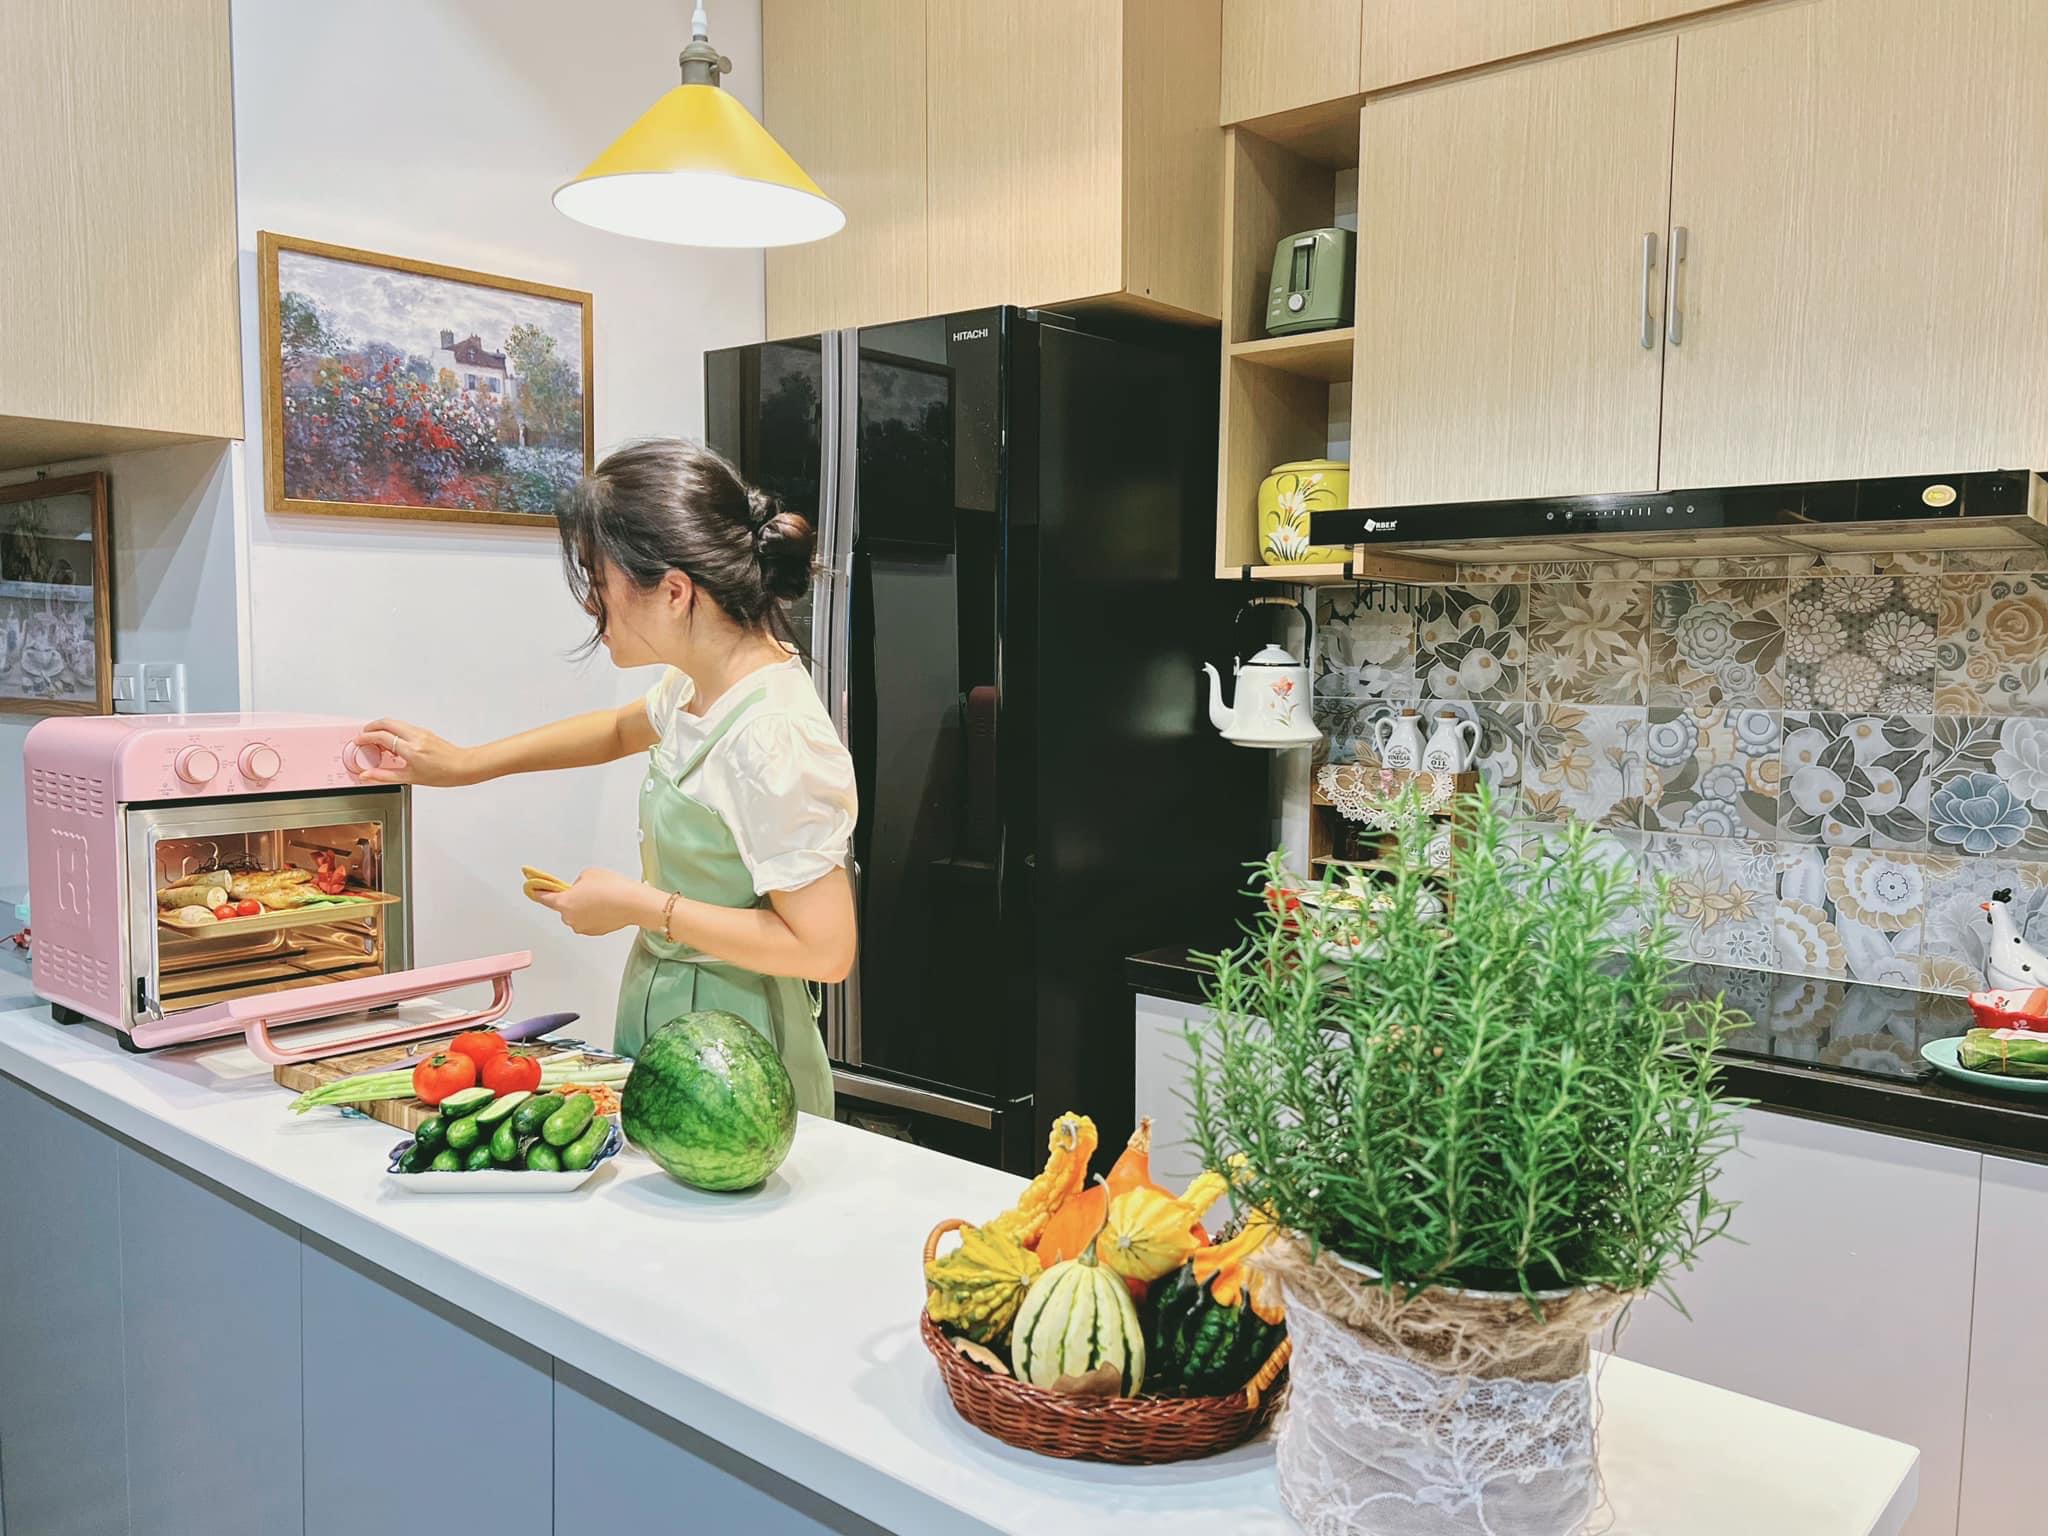 Căn bếp 4m² của bà mẹ Hà Thành đẹp như tạp chí - 5